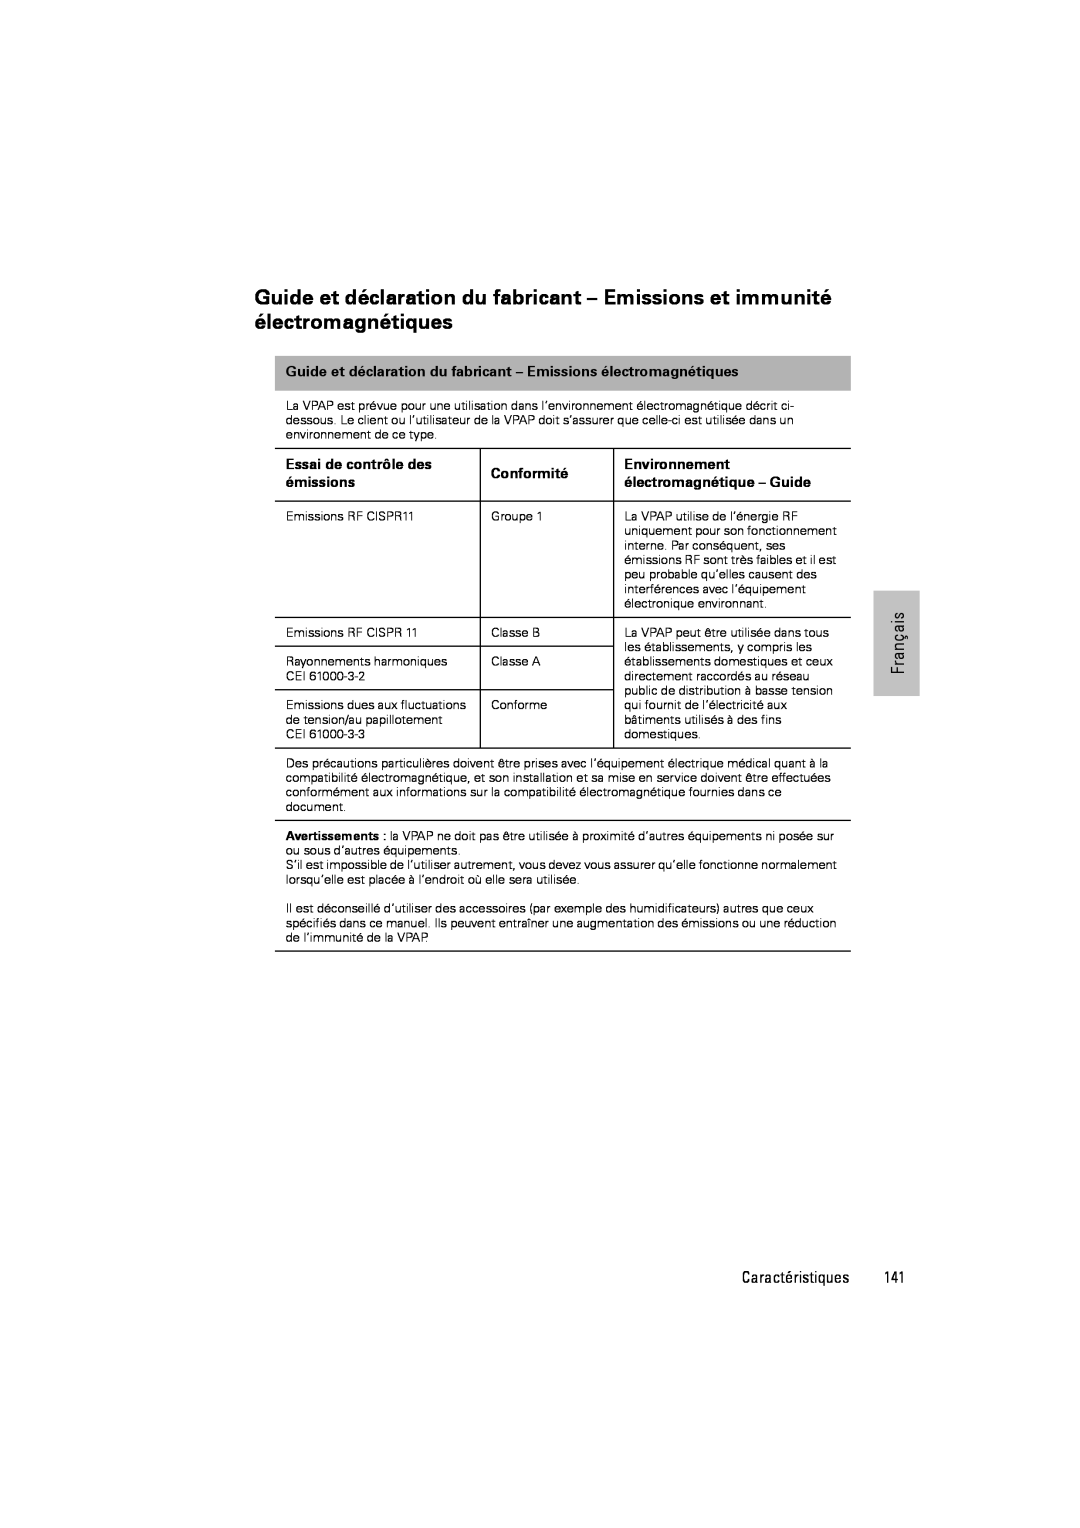 ResMed III & III ST user manual Essai de contrôle des, Conformité, Environnement, émissions, électromagnétique – Guide 